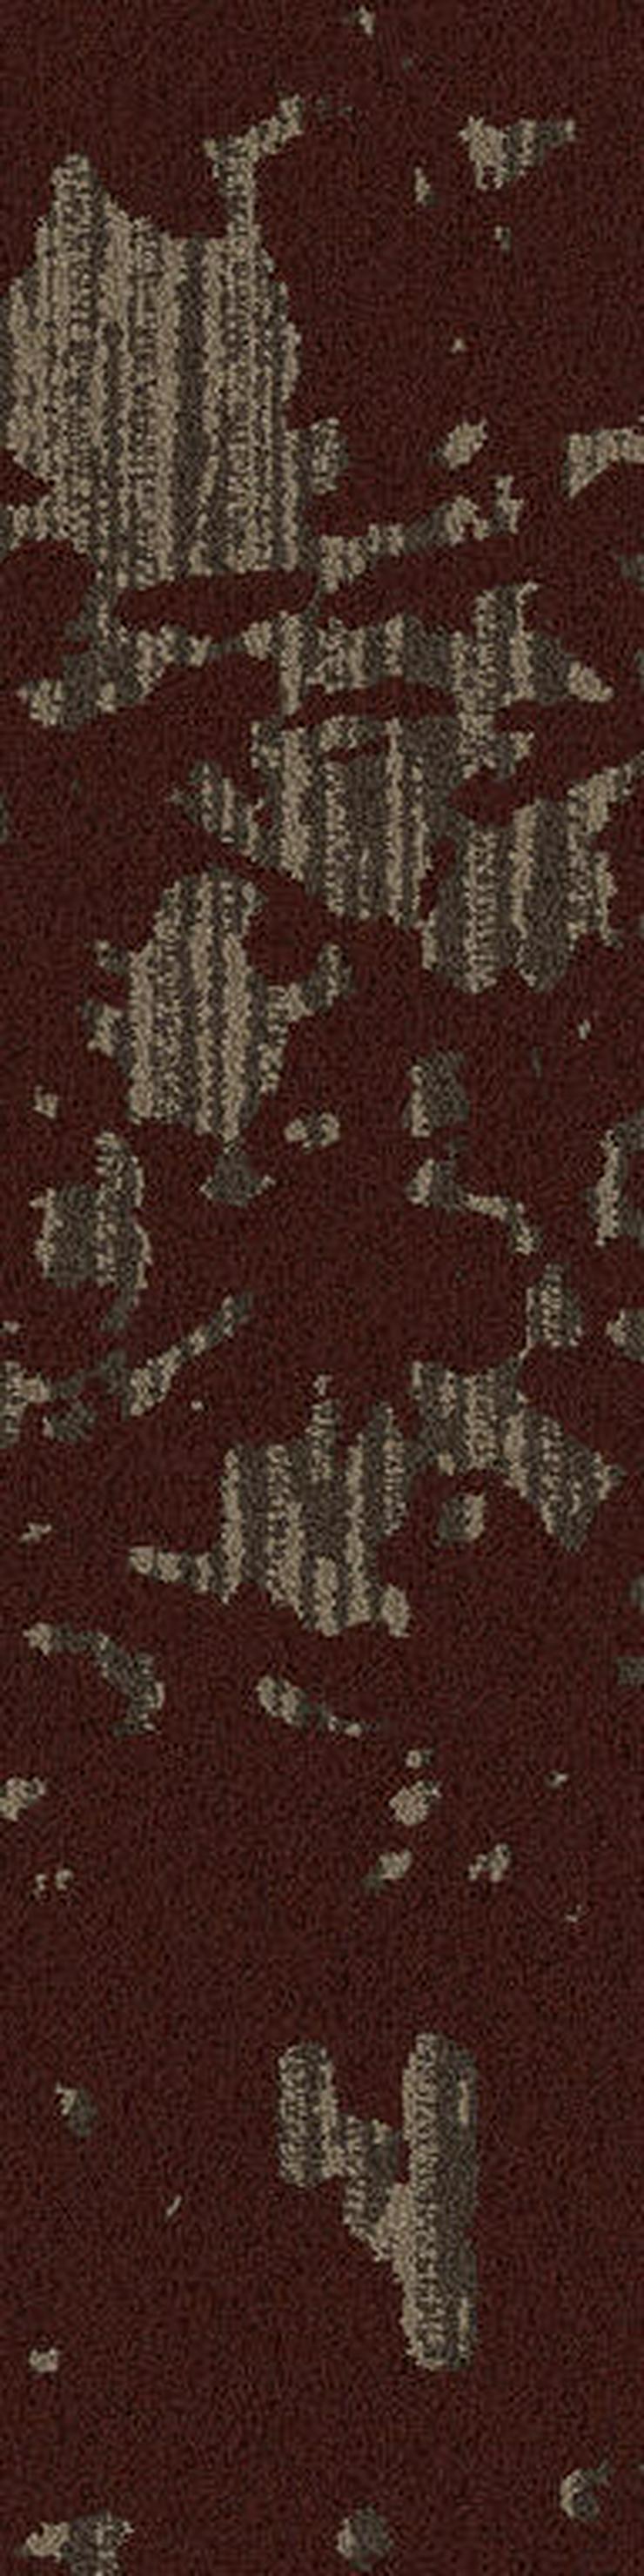 Bild 5: Global Change Serie 25 x 100cm Shading Fawn Teppichfliesen